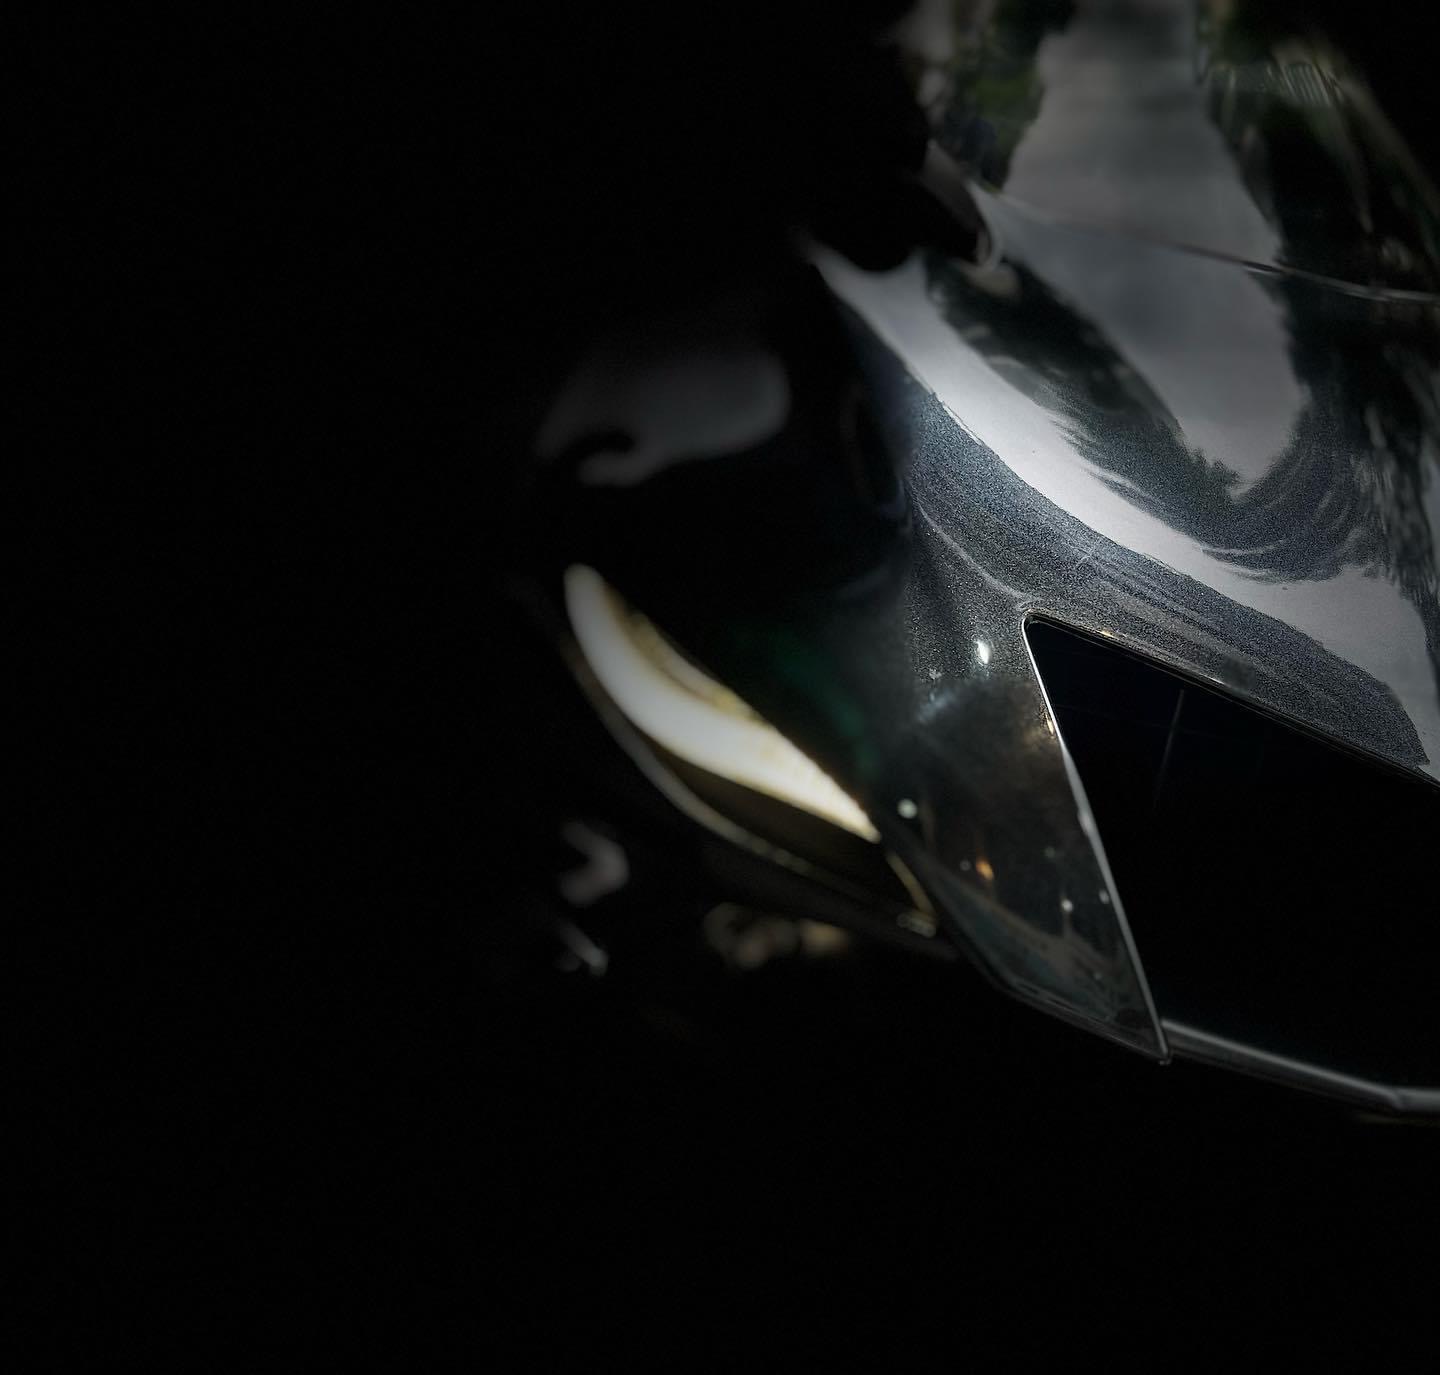 YAMAHA YZF-R6 - 中古/二手車出售中 Yamaha YZF R6 視訊賞車無壓力 臉書Ig:小資族二手重機買賣 | 小資族二手重機買賣